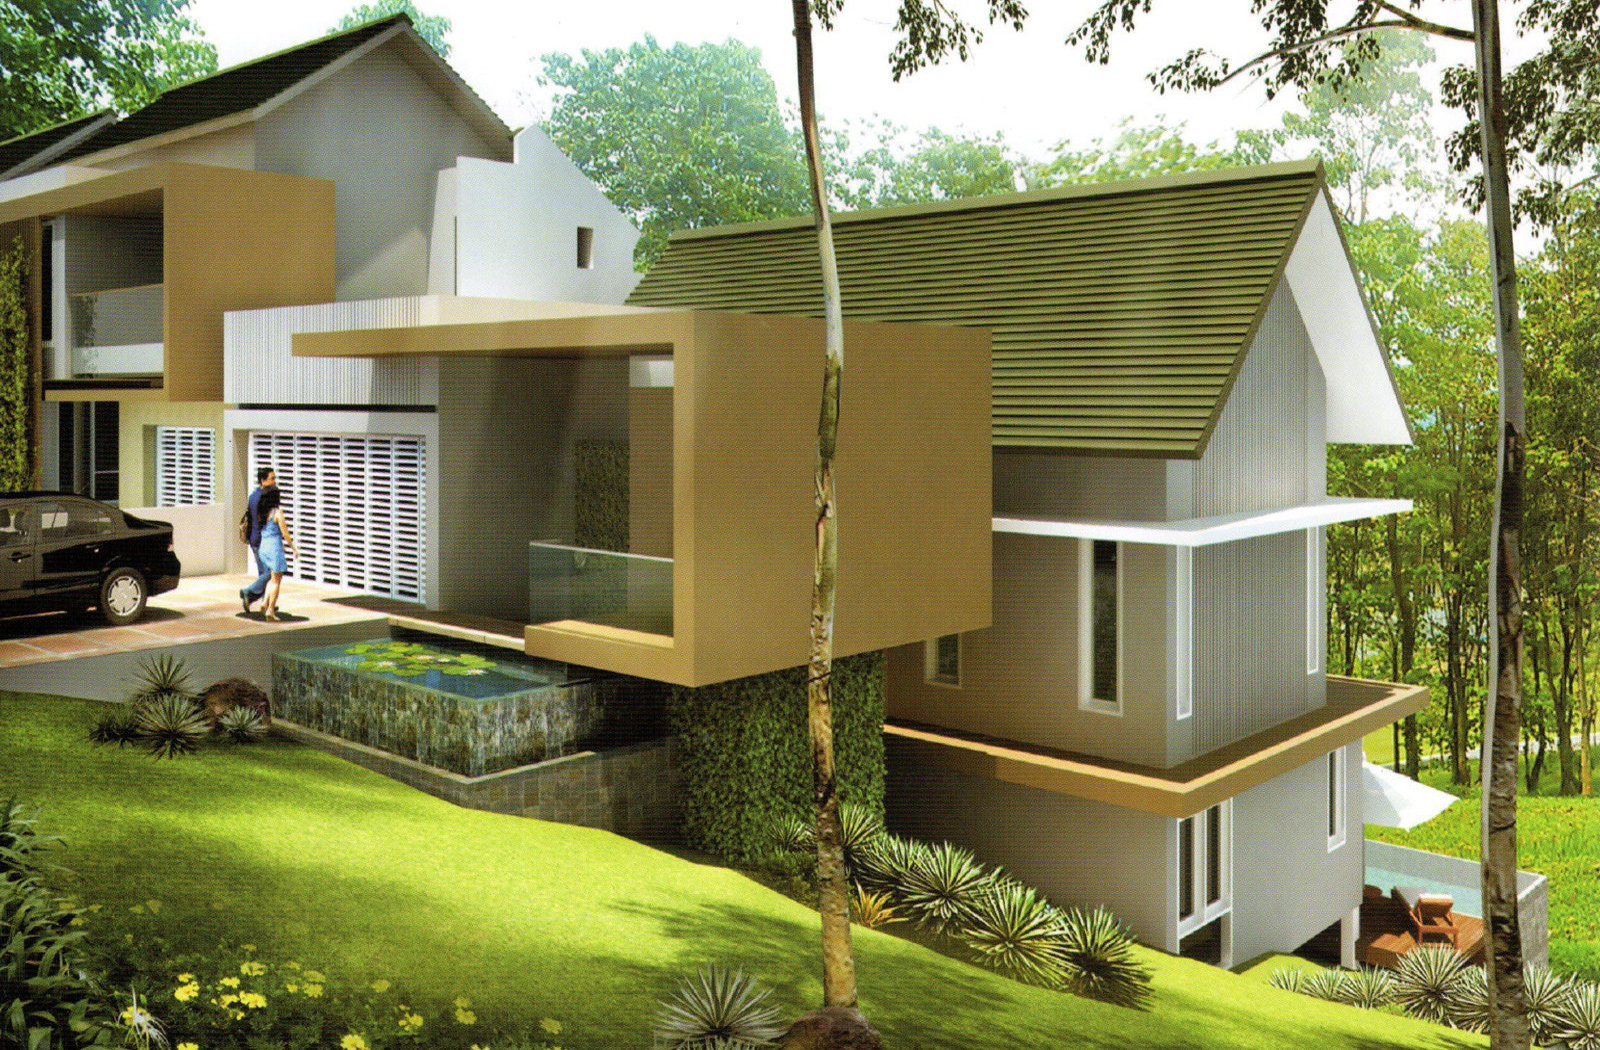 Desain Rumah Minimalis Di Sentul City Propertiniagacom